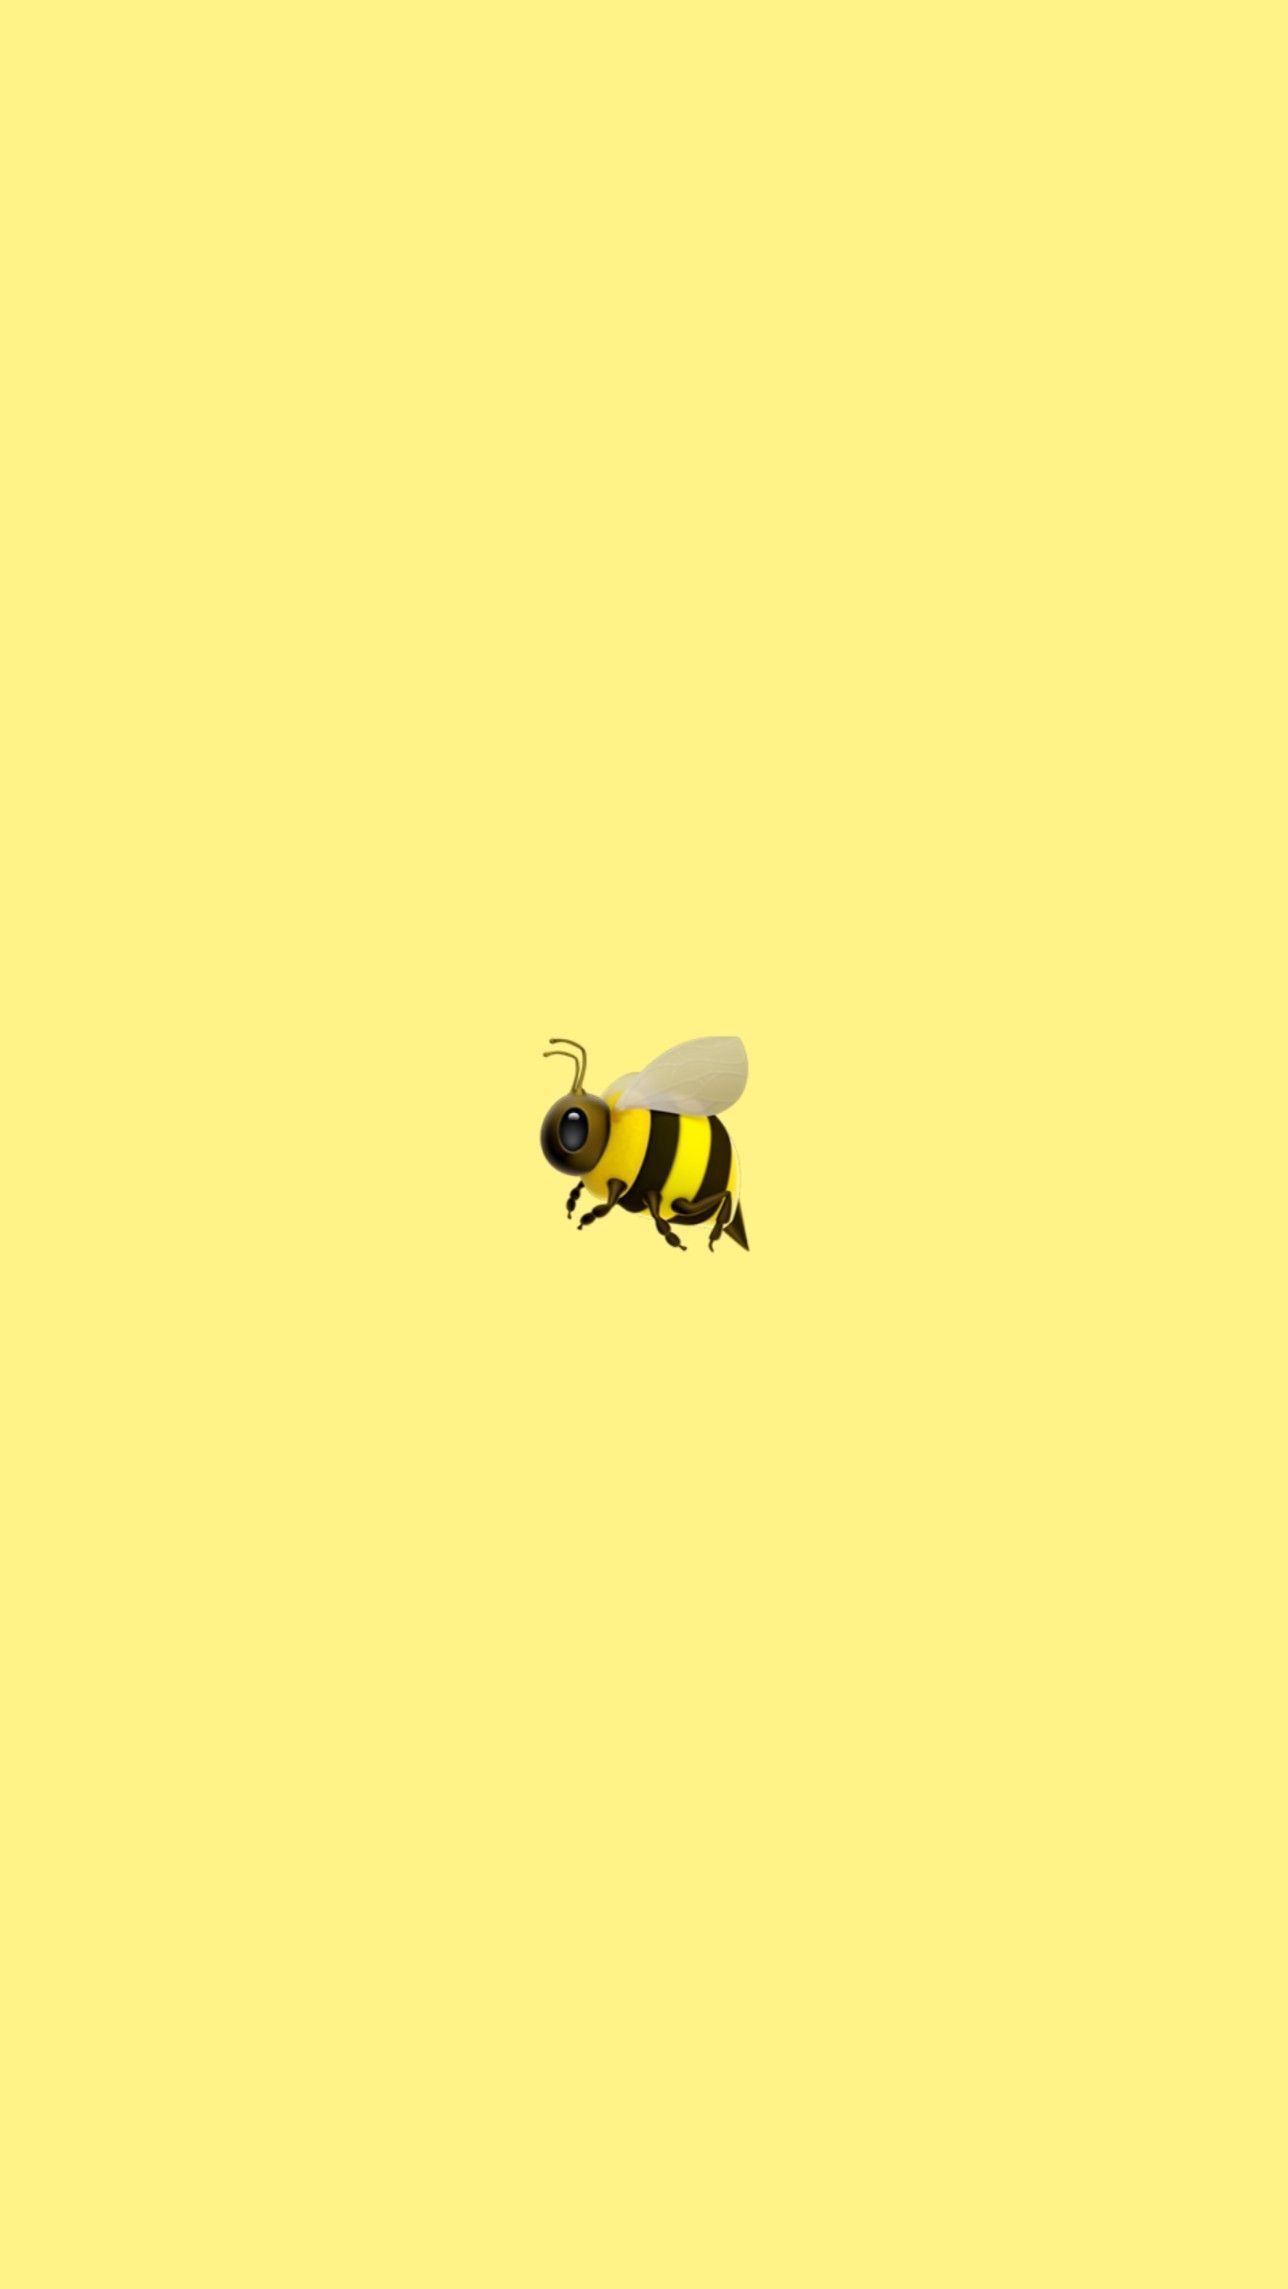 Cute bee wallpaper. Wallpaper iphone cute, Cute emoji wallpaper, iPhone wallpaper vintage